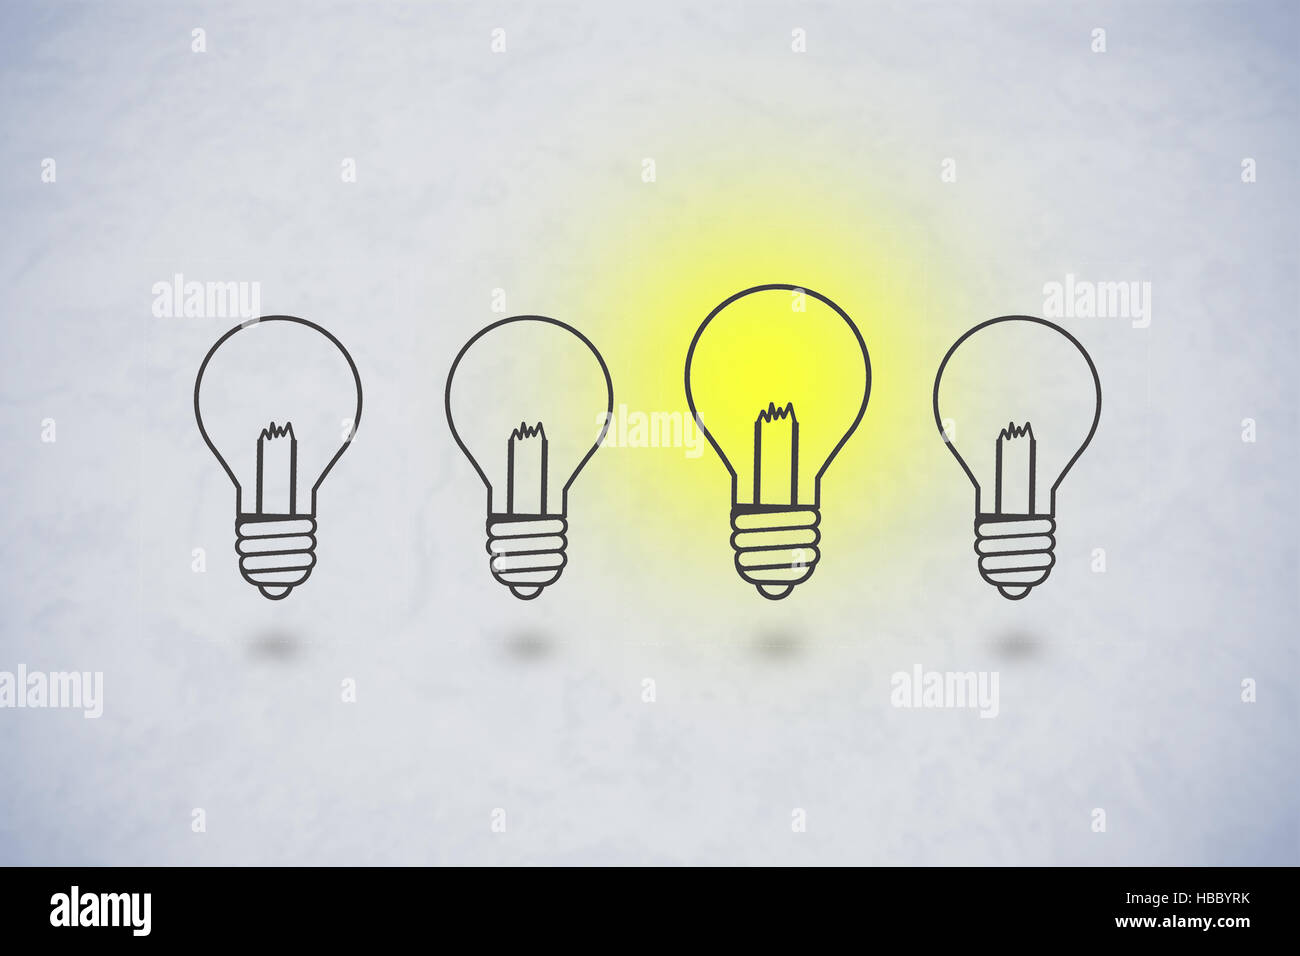 Bright Idea Concept Stock Photo